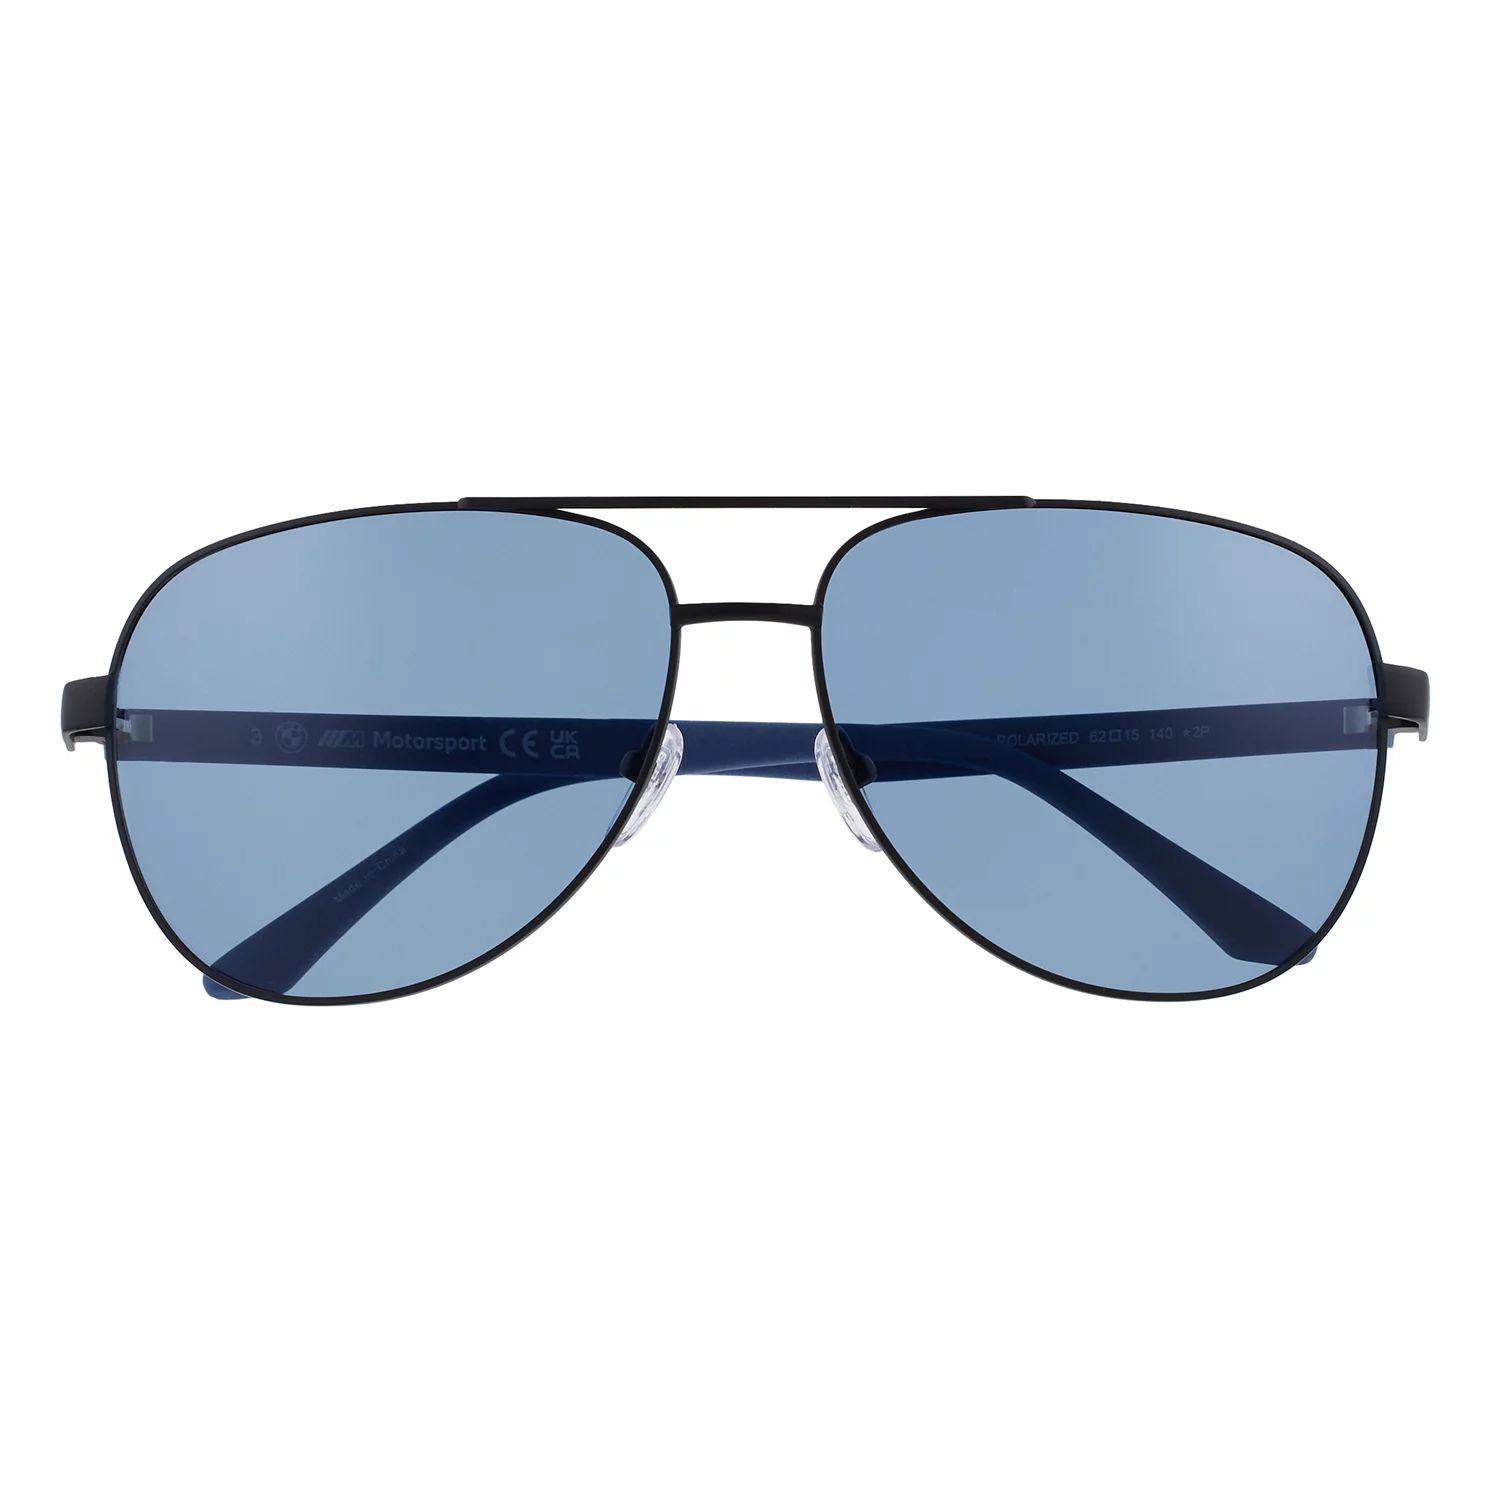 Поляризованные солнцезащитные очки-авиаторы BMW Motorsport